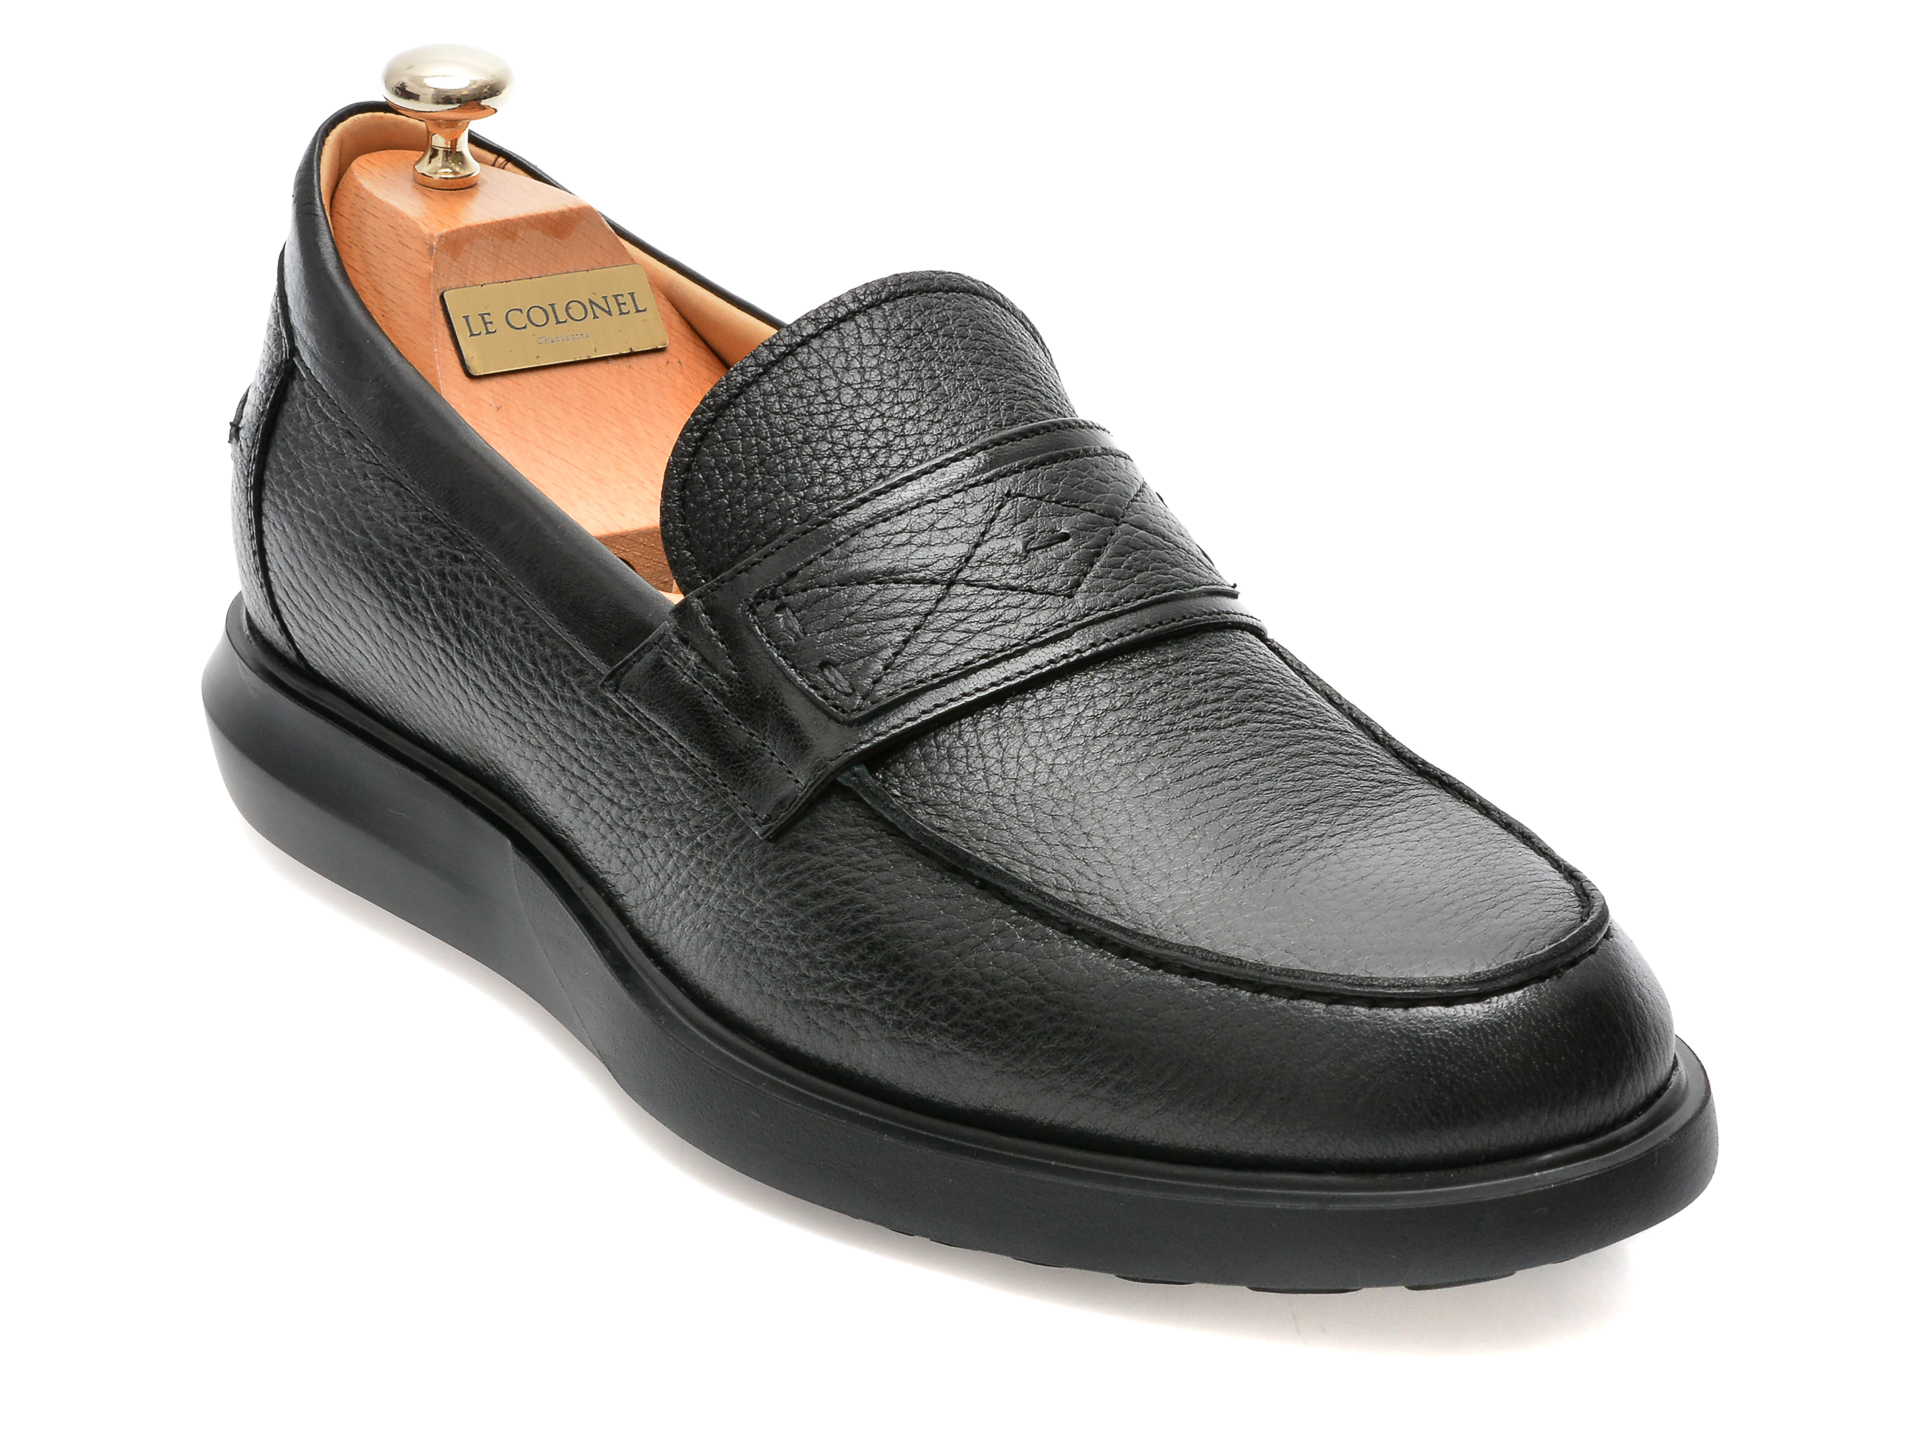 Pantofi LE COLONEL negri, 66616, din piele naturala barbati 2023-03-24